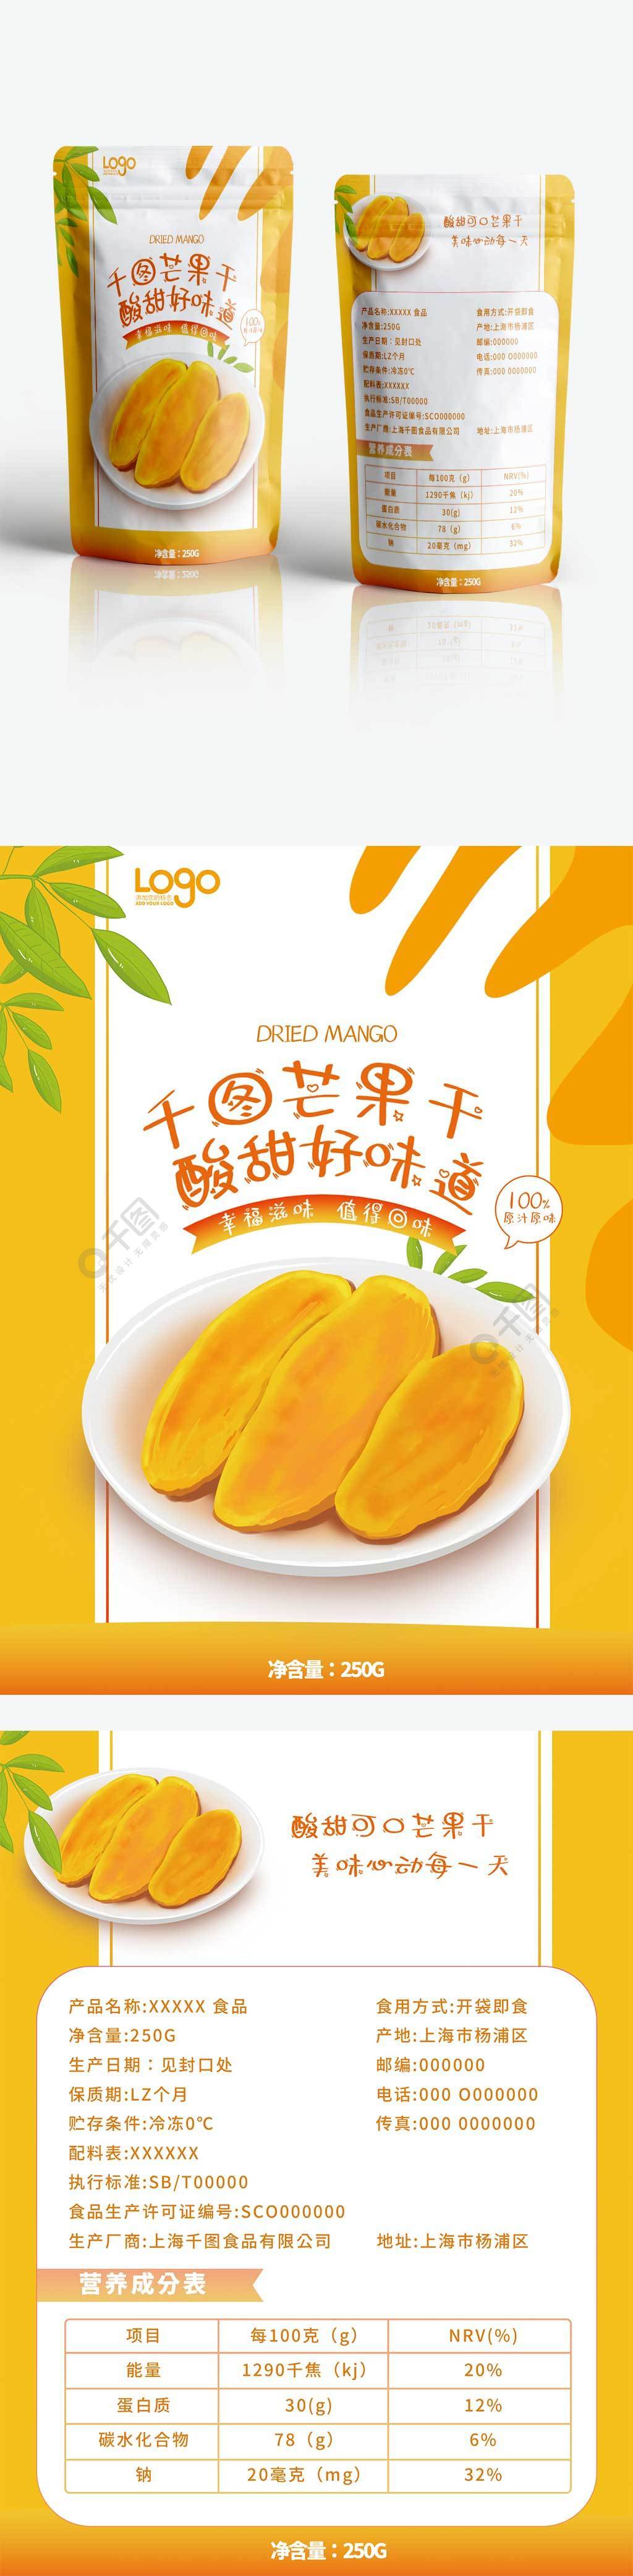 芒果干酸甜零食干货卡通可爱包装